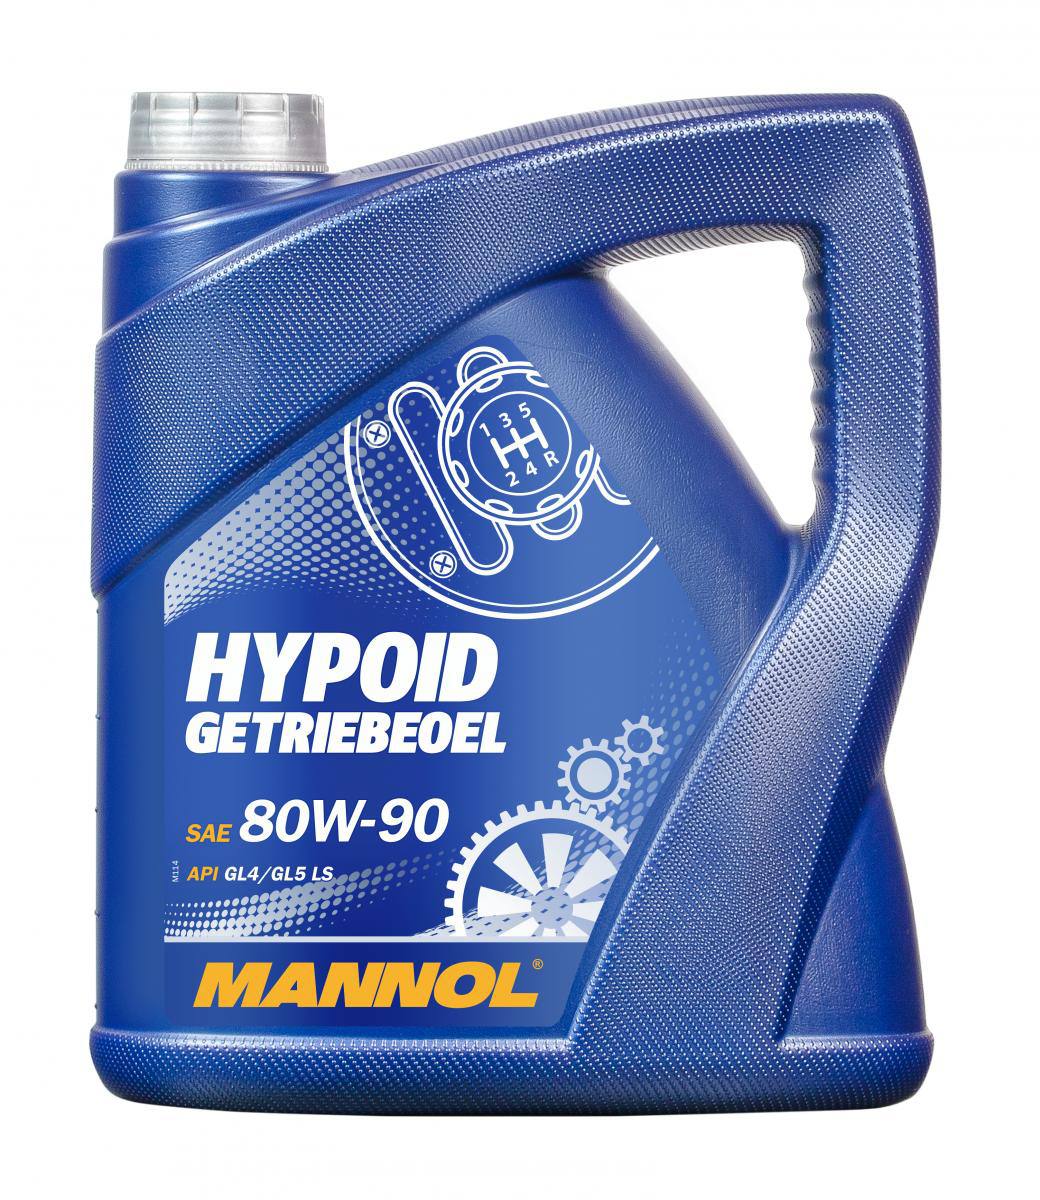 Hypoid Getriebeoel 80W-90